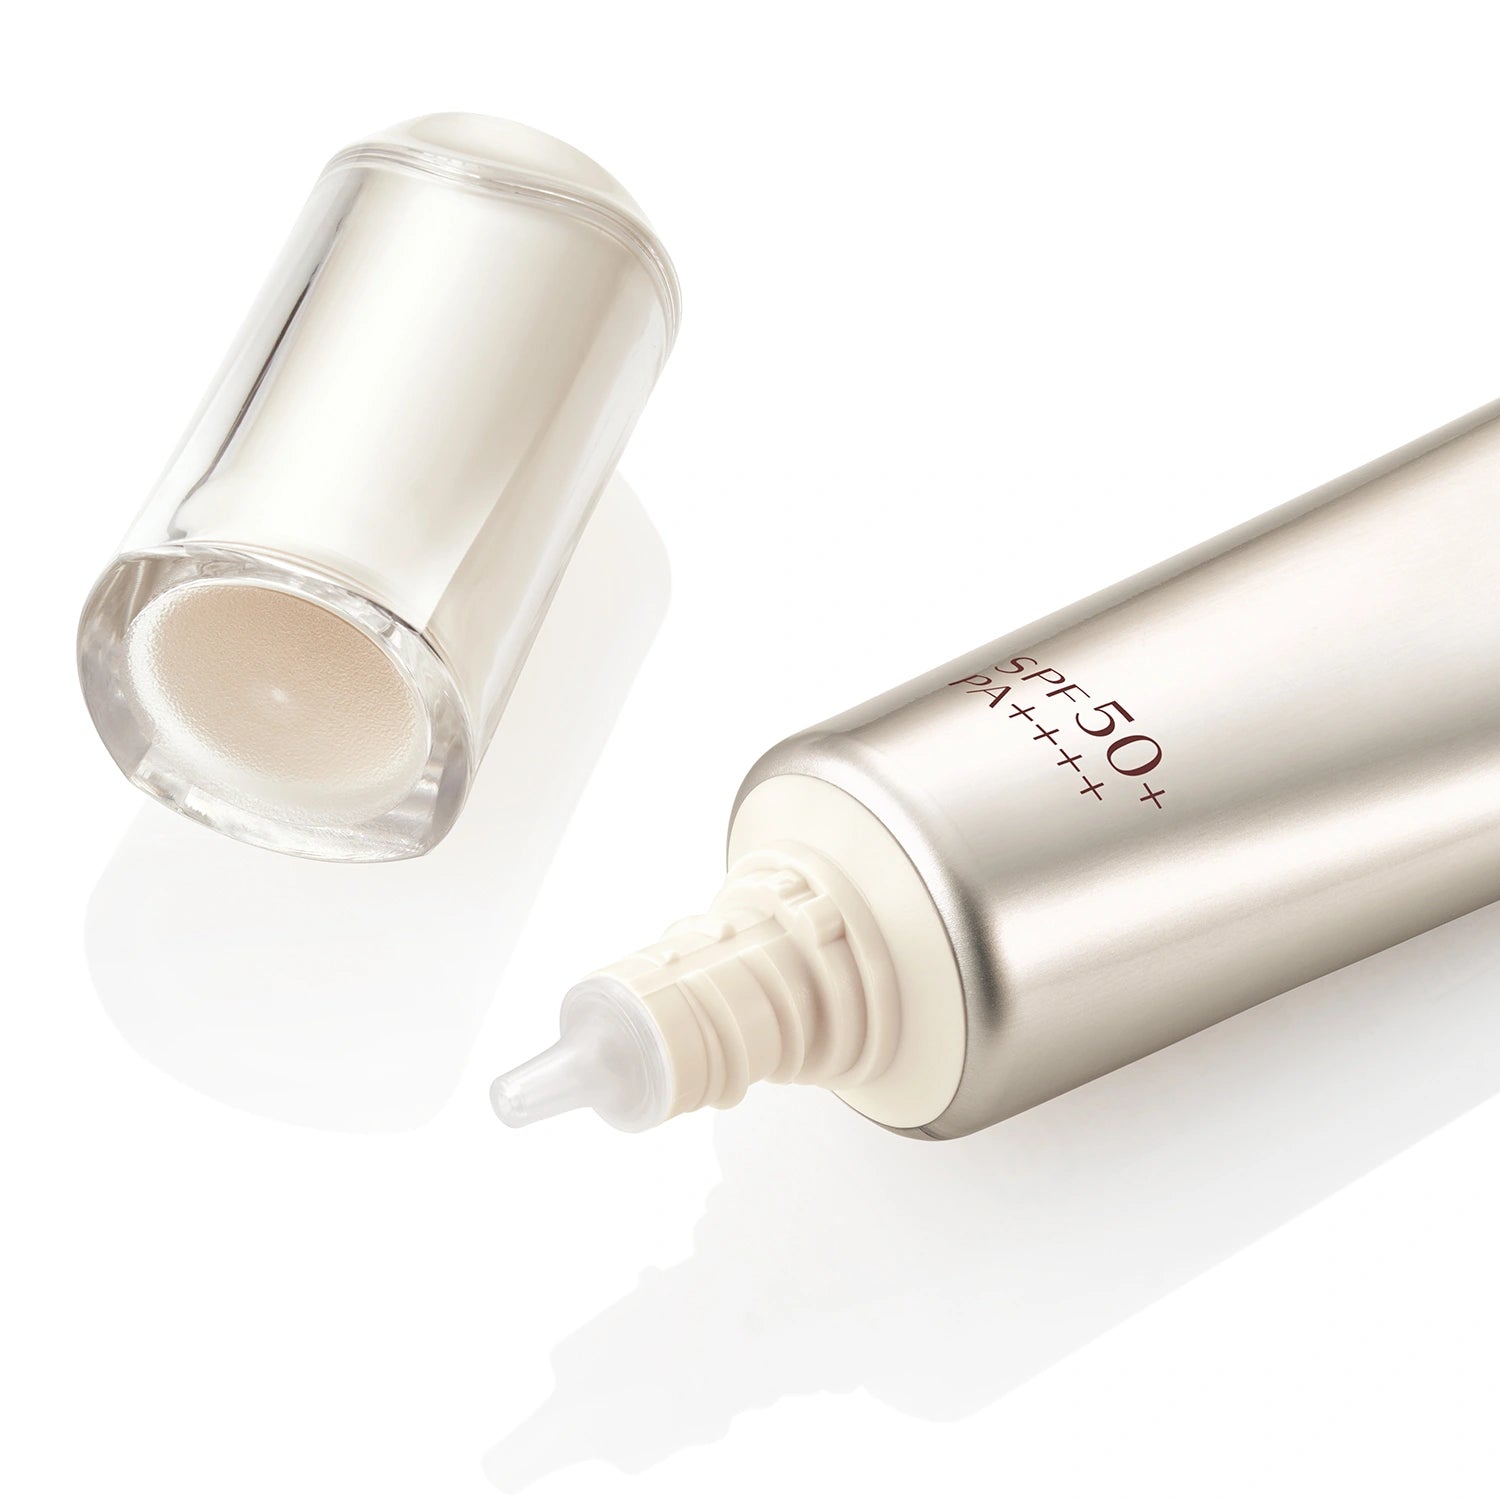 Shiseido Elixir Daily UV Protector SPF50+ PA++++ 35ml - Buy Me Japan